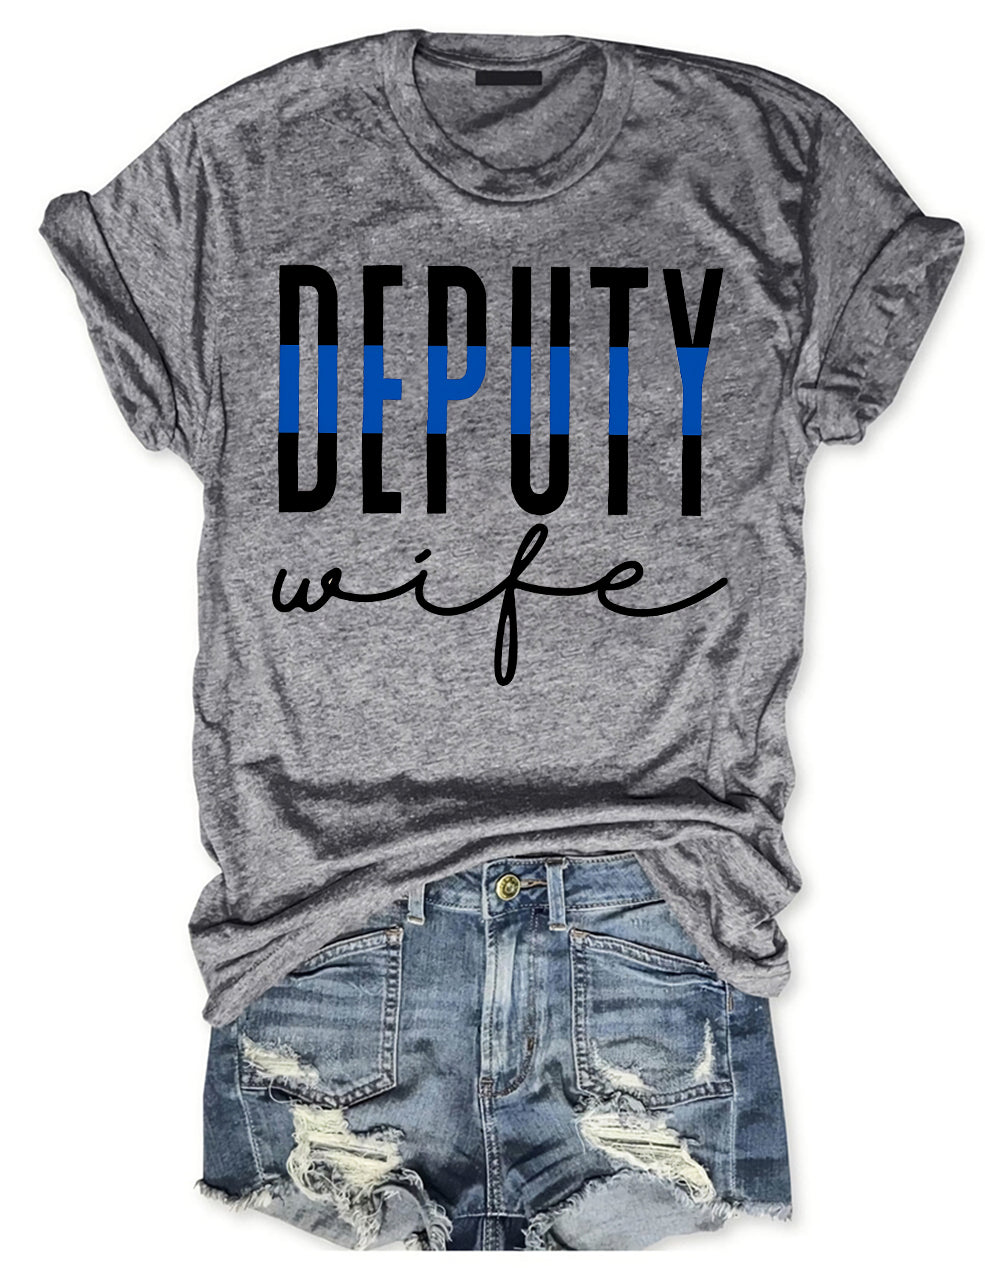 Deputy Wife T-shirt